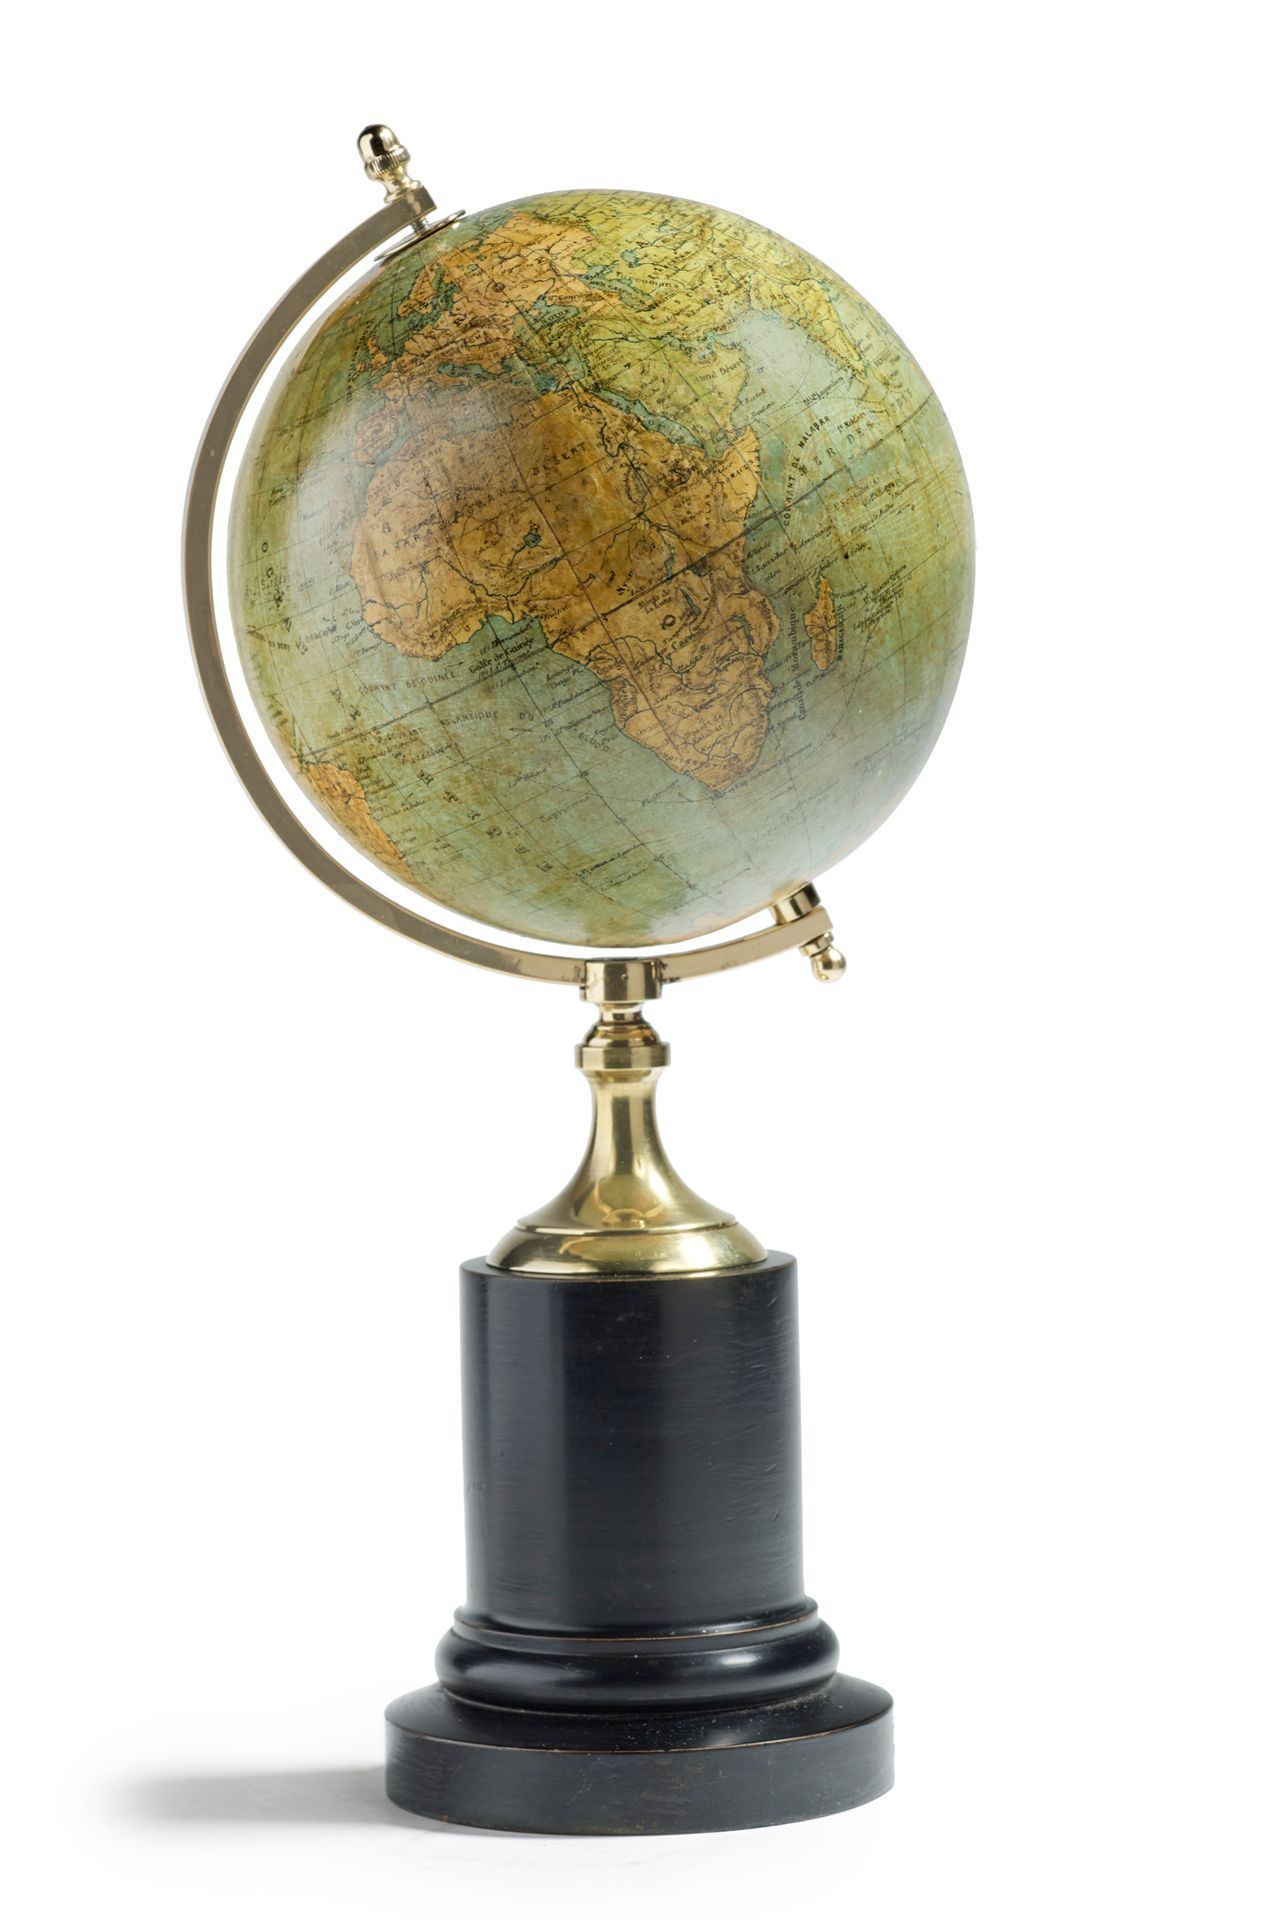 Null Globus
Halbmeridianfassung aus Messing auf einem schwarzen Holzfuß. In eine&hellip;